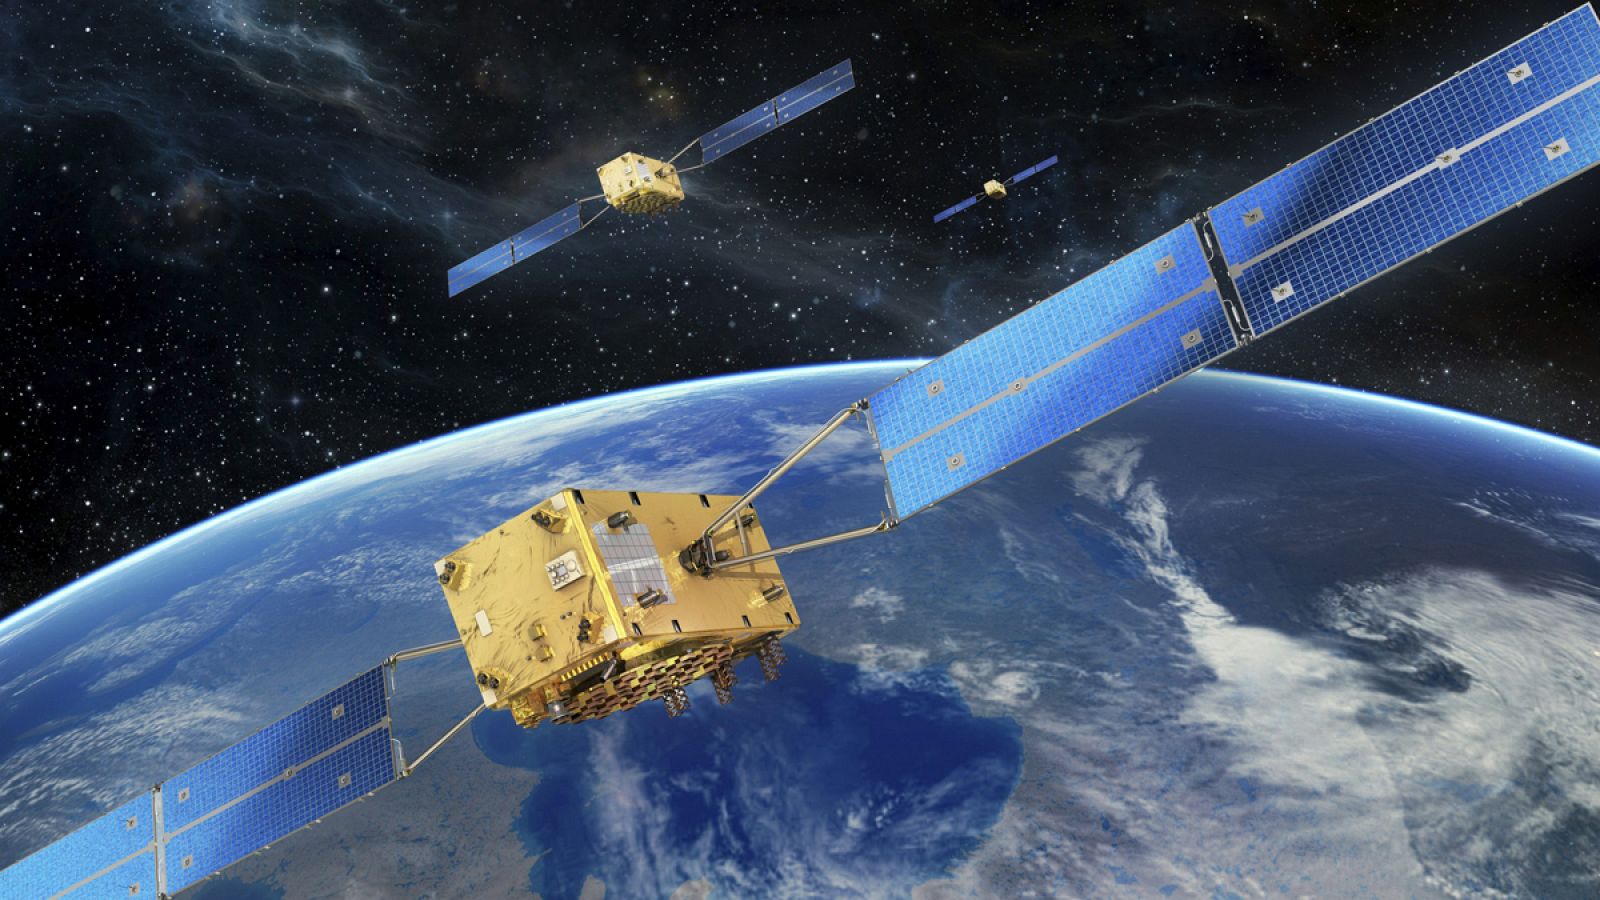 Fotografía facilitada por la Agencia Espacial Europea del sistema de navegación por satélite Galileo